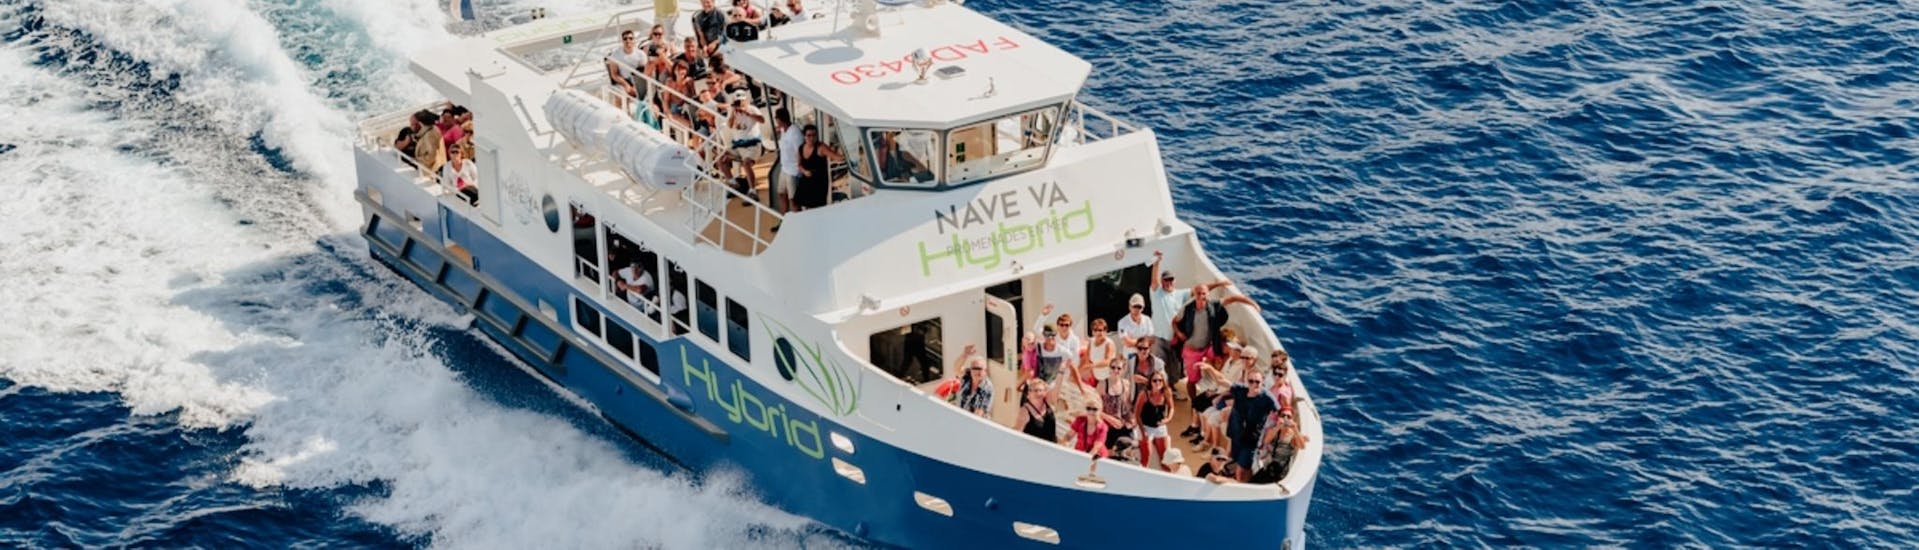 Bateau de Nave Va Promenades en Mer durant l'excursion en bateau de Porto aux Calanques de Piana avec escale à Capo Rosso avec Nave Va Promenades en Mer.